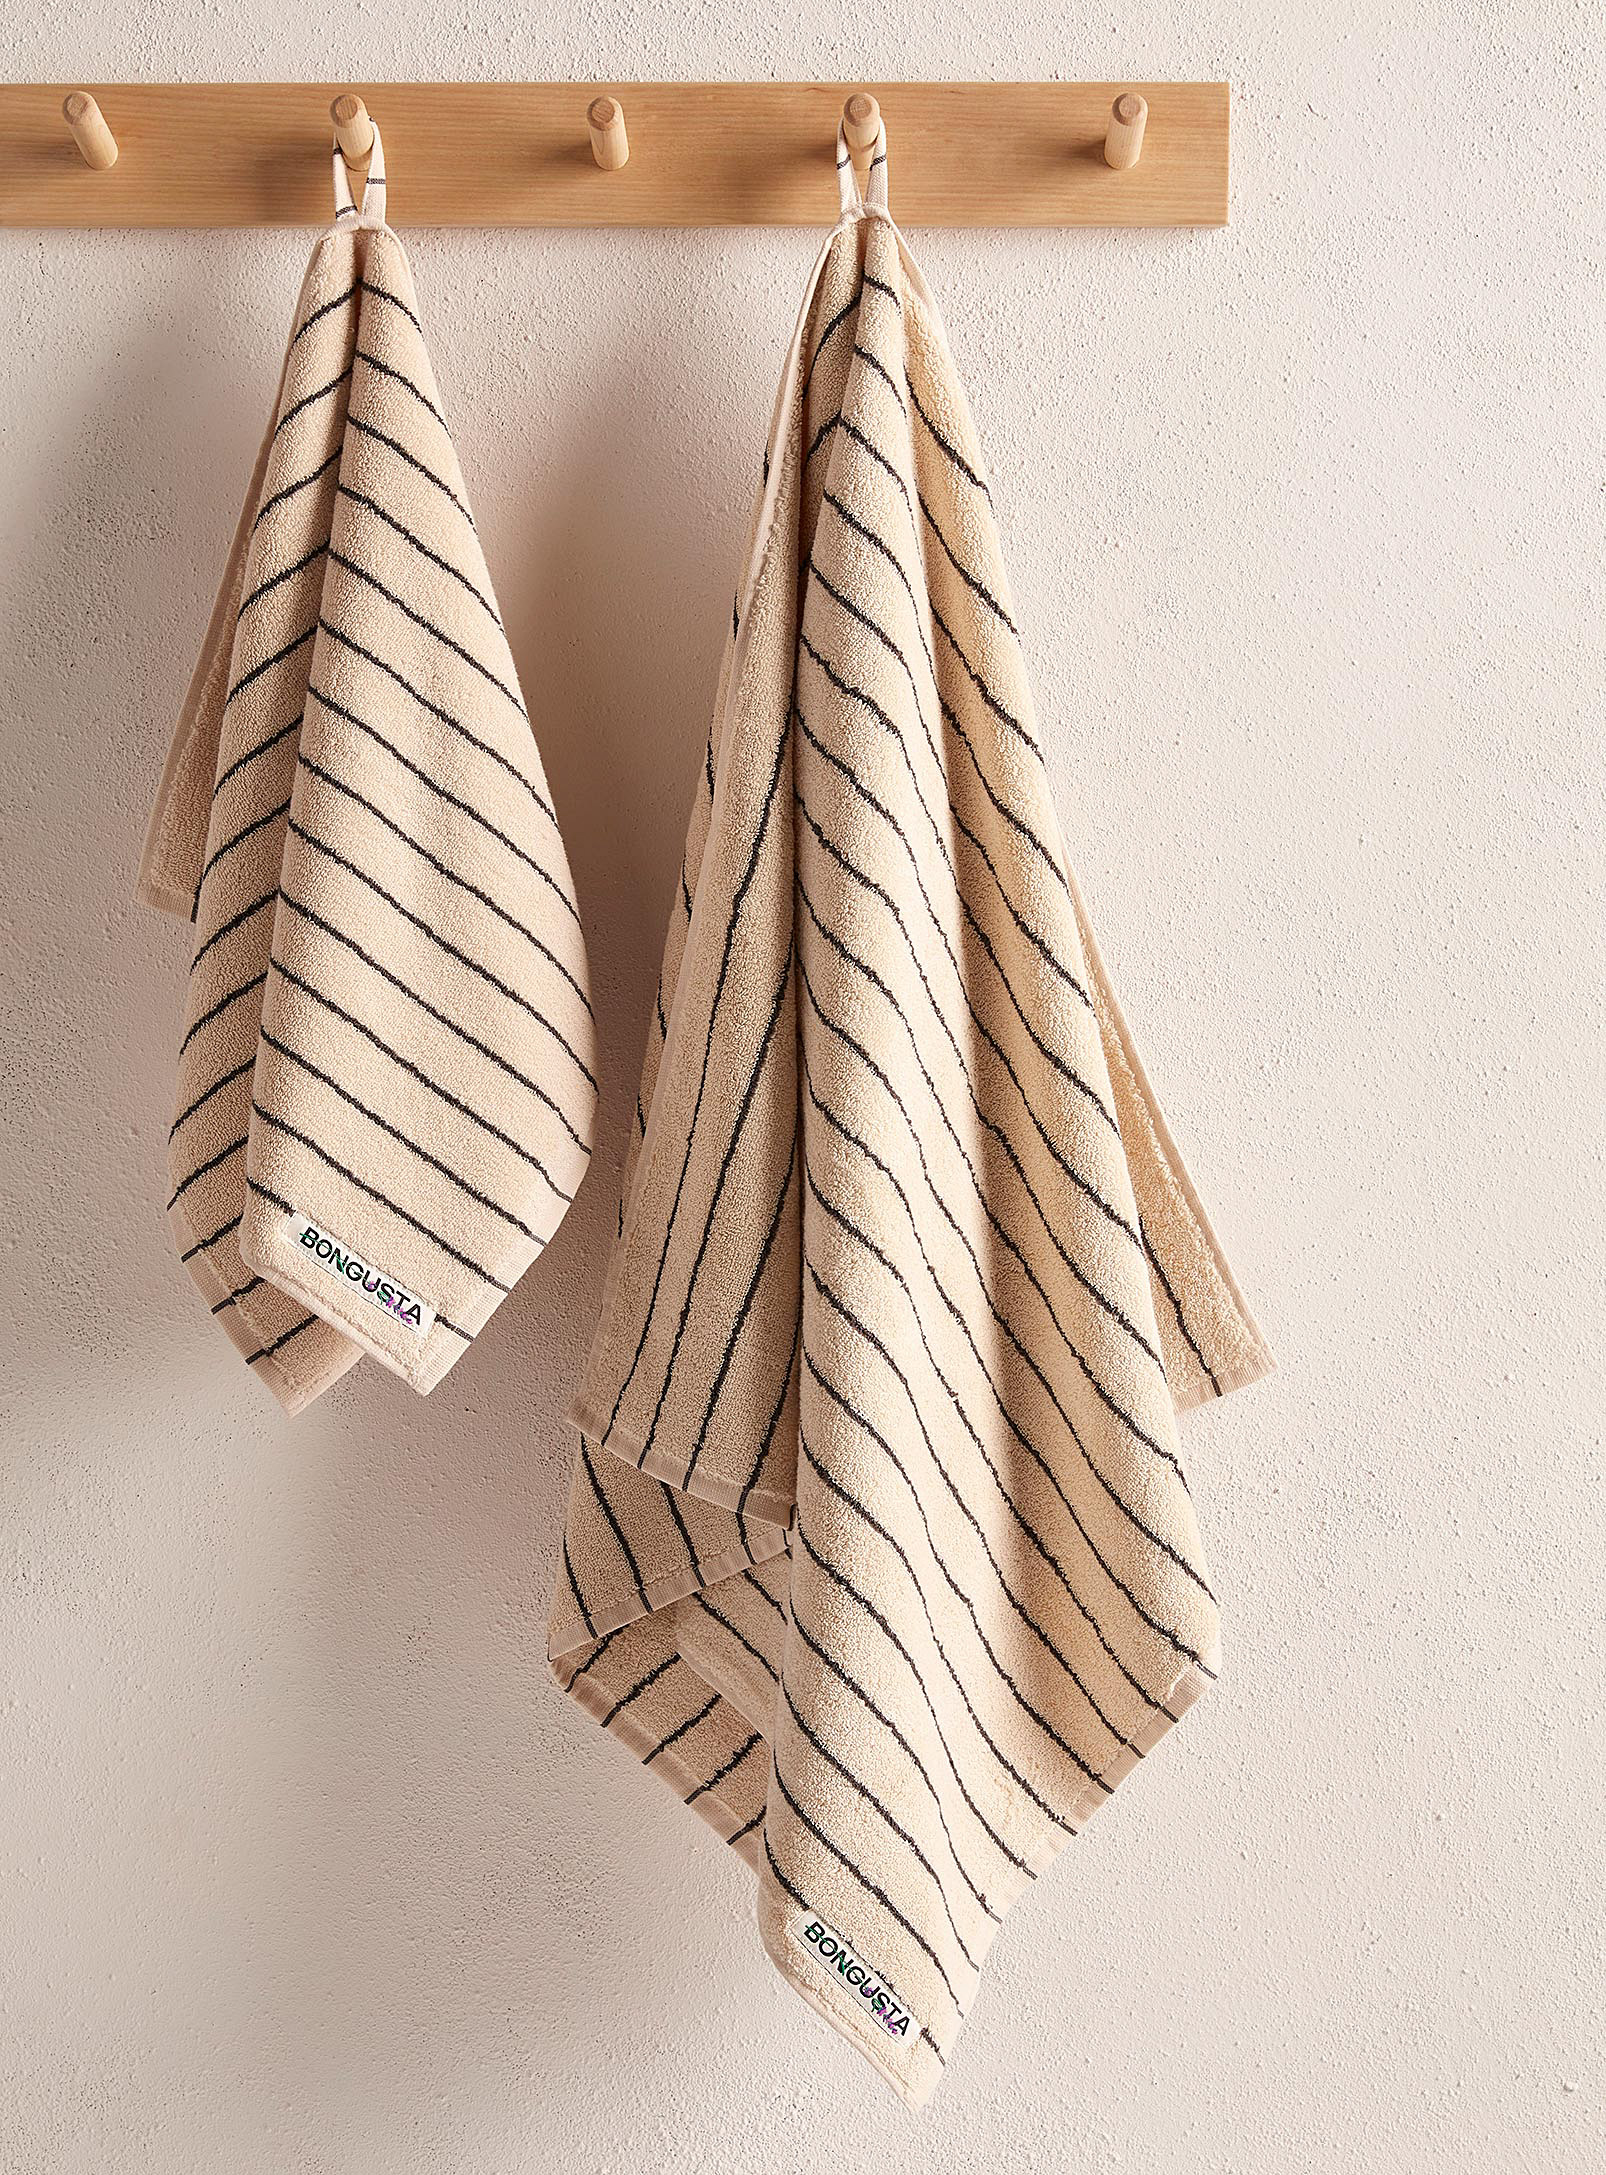 Bongusta Naram Striped Towels In Patterned Ecru